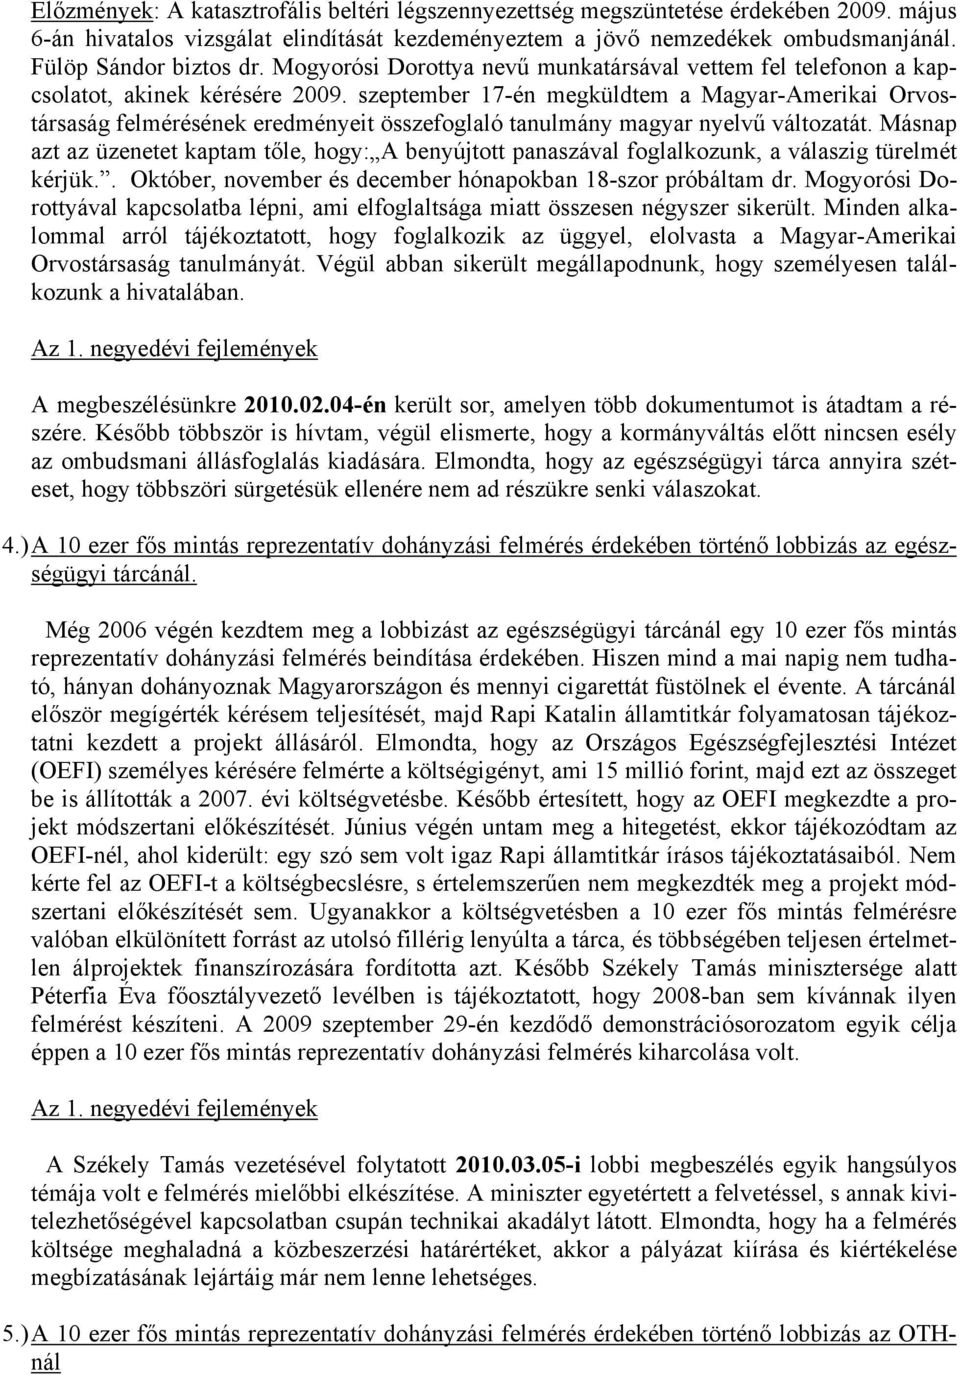 szeptember 17-én megküldtem a Magyar-Amerikai Orvostársaság felmérésének eredményeit összefoglaló tanulmány magyar nyelvű változatát.